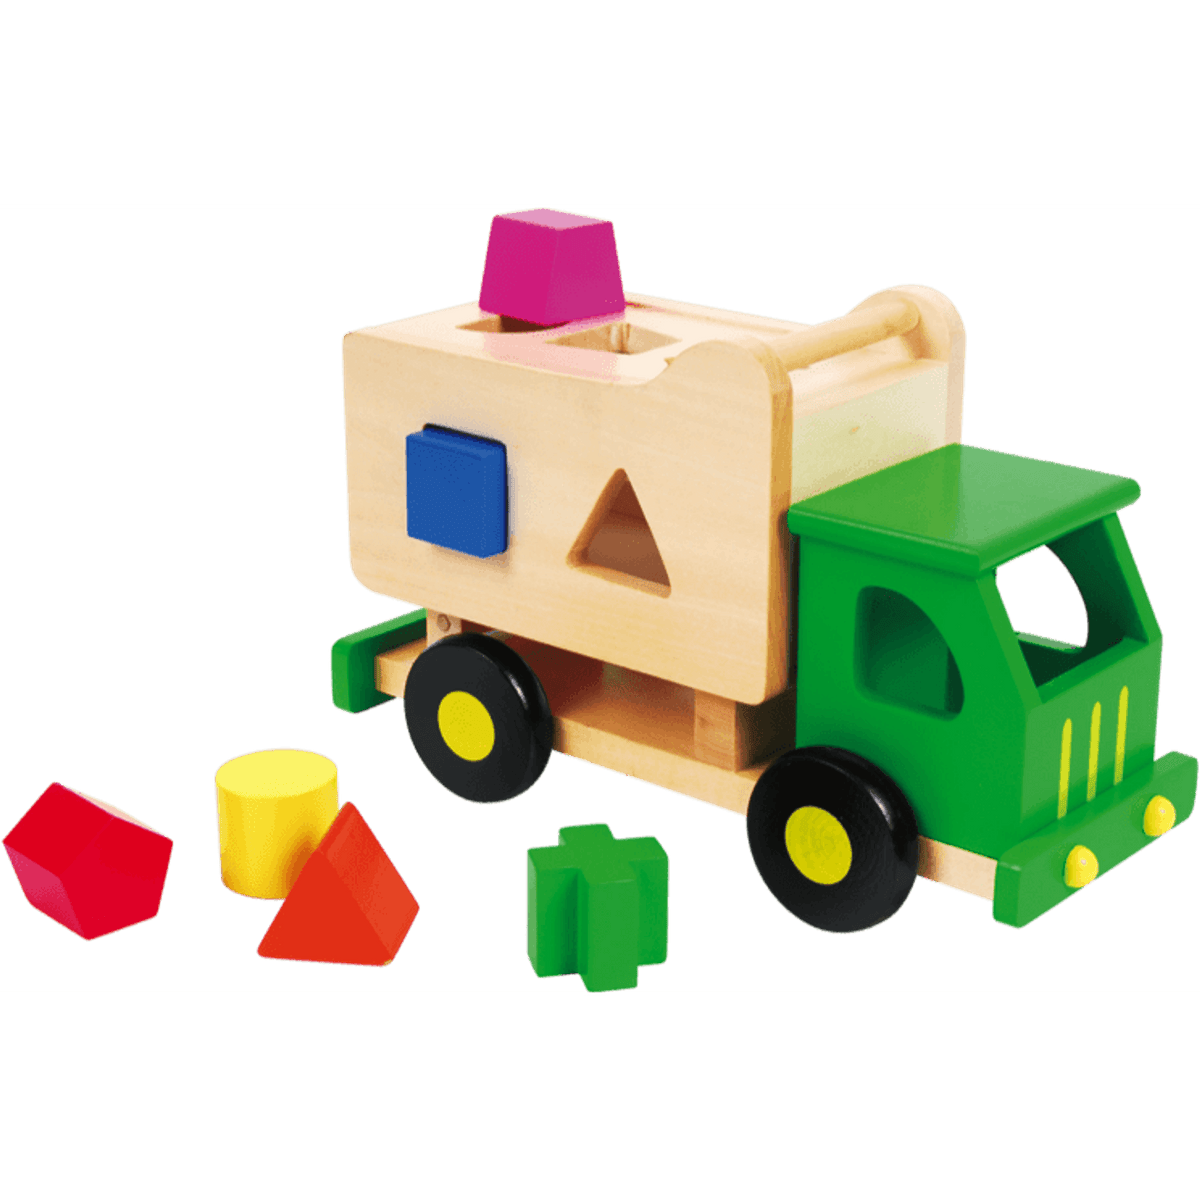 Sort N' Tip Garbage Truck - Toybox Tales